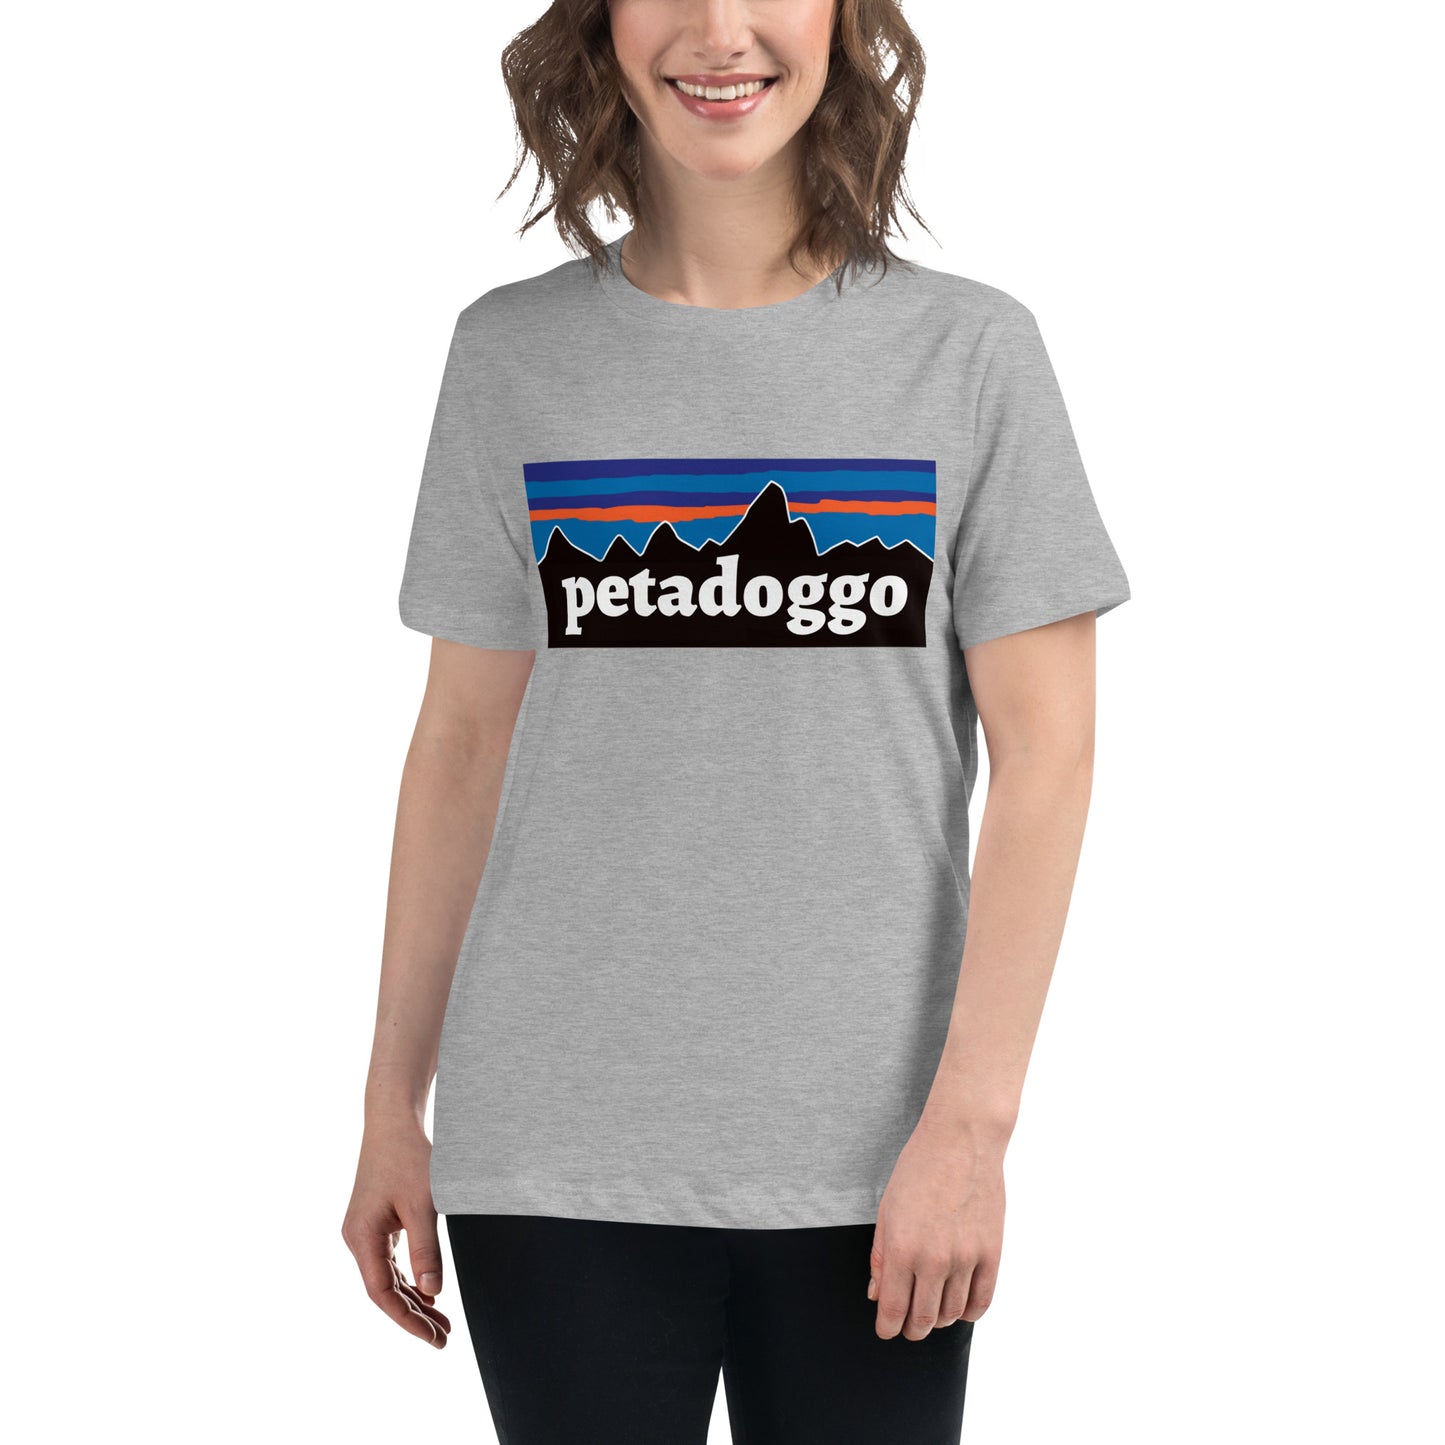 Petadoggo Women's Relaxed T-Shirt